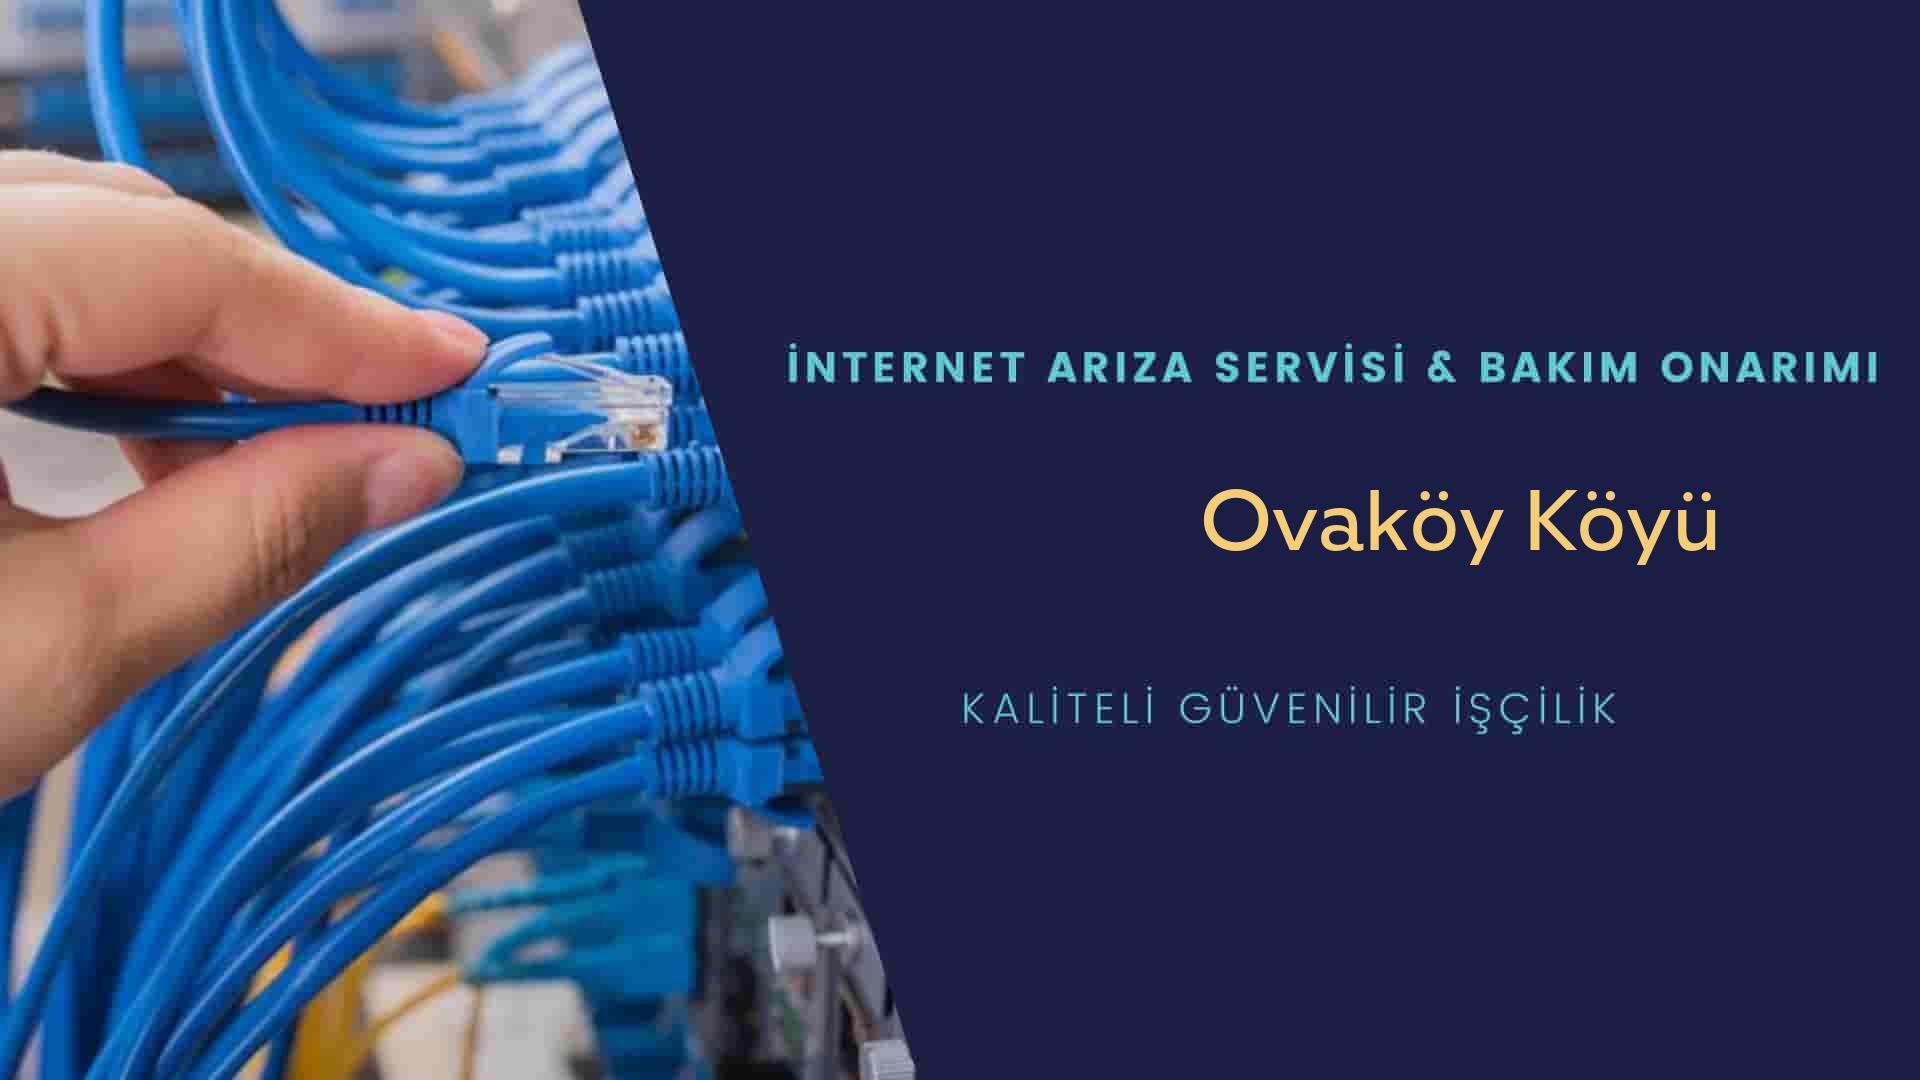 Ovaköy Köyü internet kablosu çekimi yapan yerler veya elektrikçiler mi? arıyorsunuz doğru yerdesiniz o zaman sizlere 7/24 yardımcı olacak profesyonel ustalarımız bir telefon kadar yakındır size.